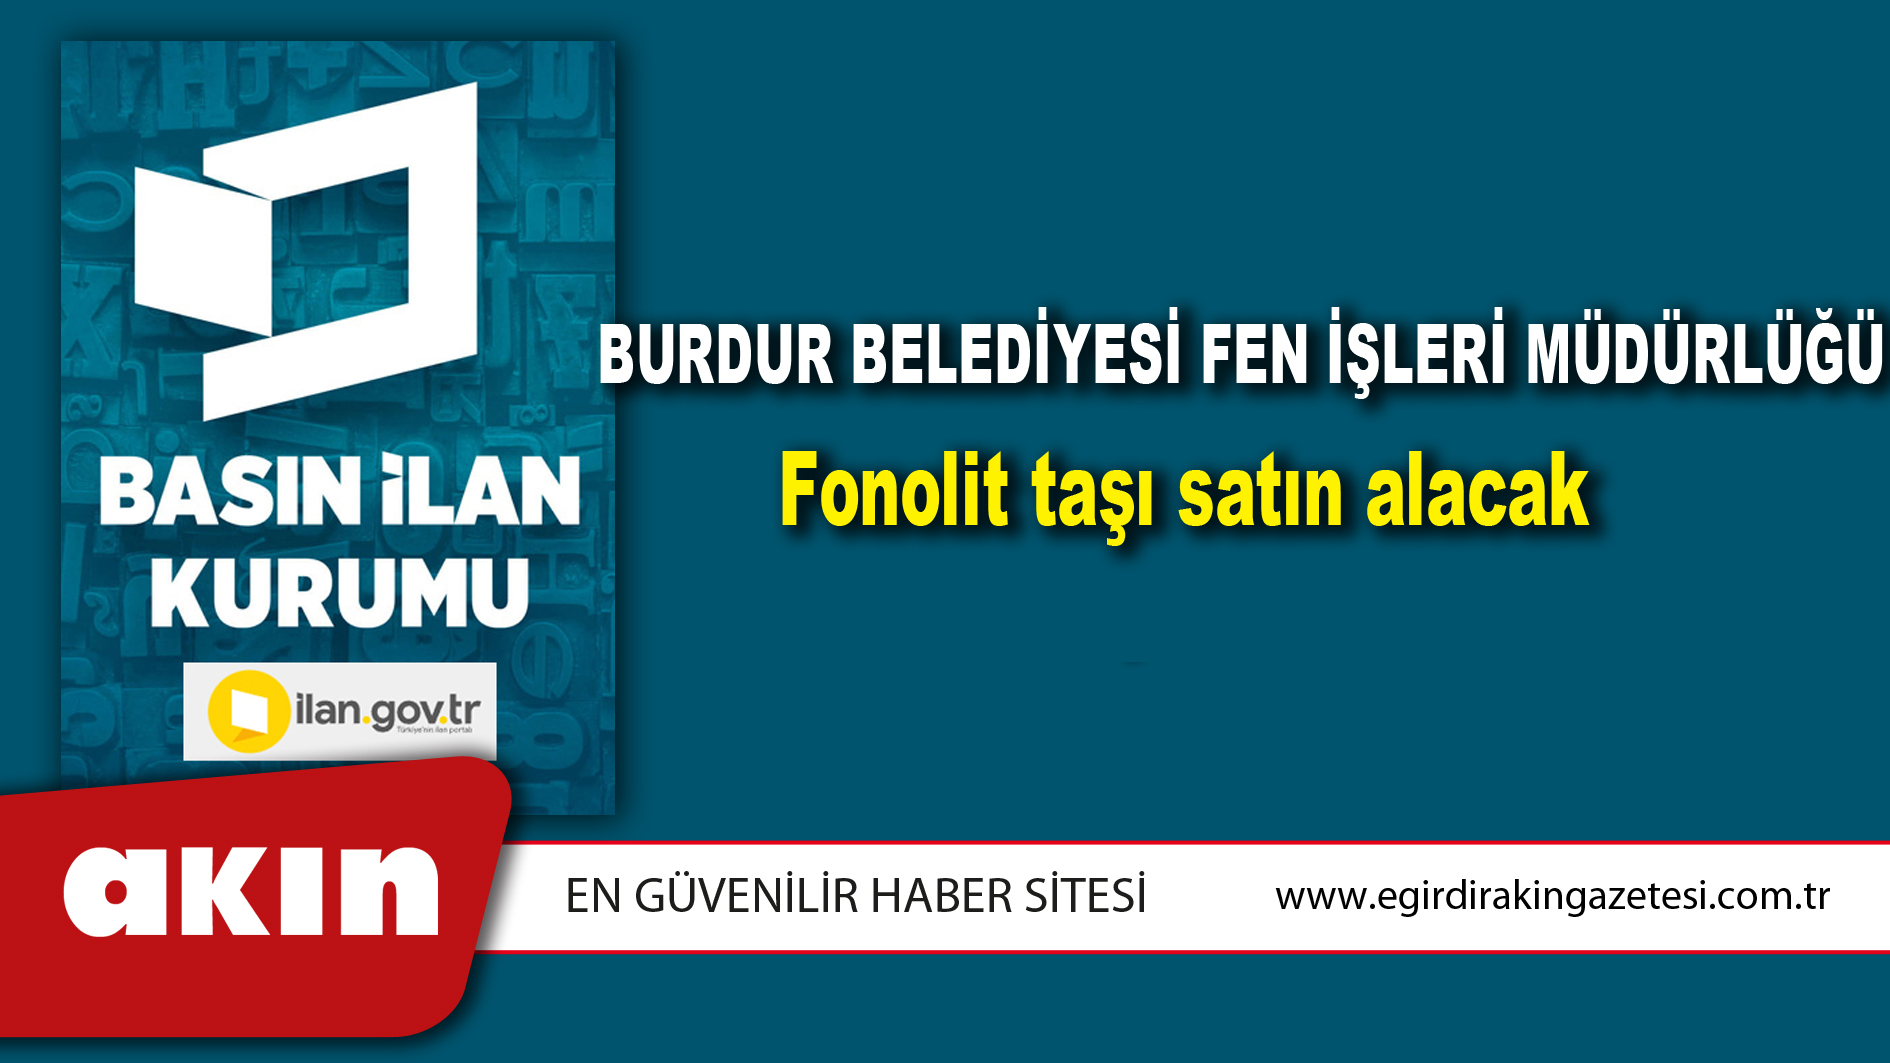 Burdur Belediyesi Fen İşleri Müdürlüğü Fonolit taşı satın alacak